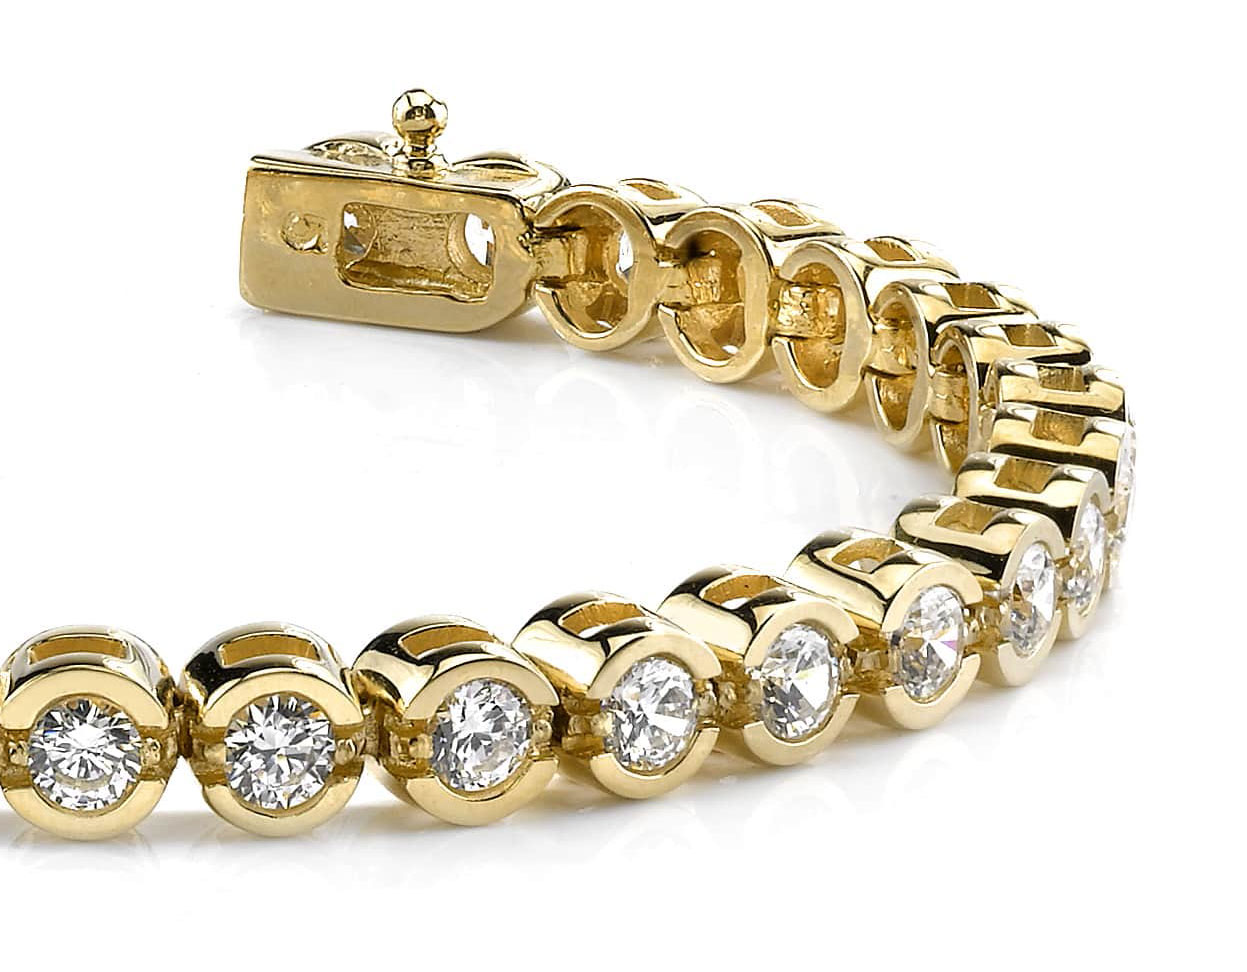 15 Stunning Designs of Diamond Bracelets for Men and Women